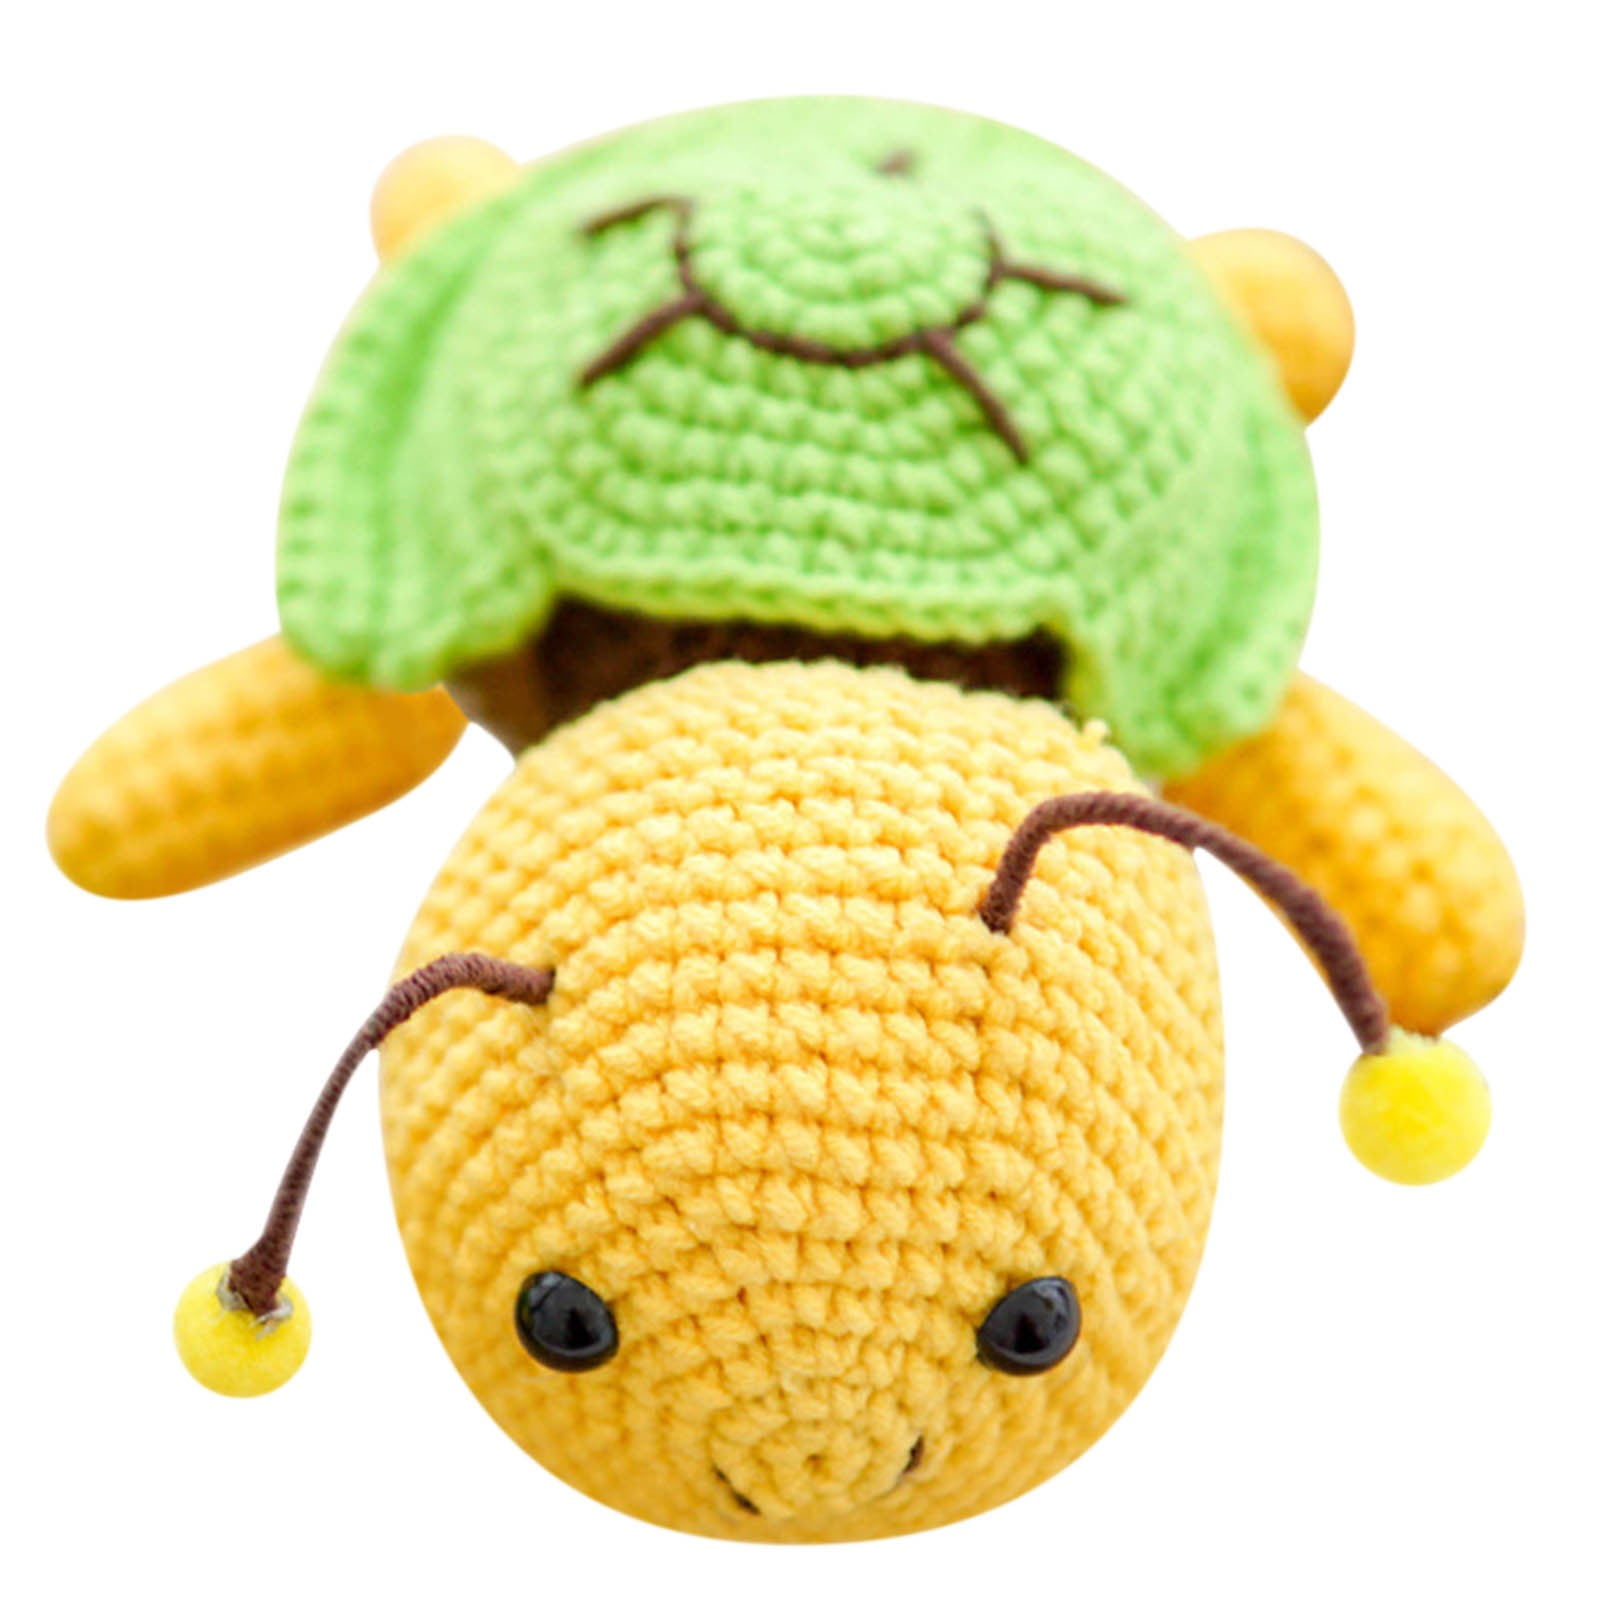 Beginner Crochet Kit, Crochet Kits for Kids and Adults, 3PCS Crochet Animal